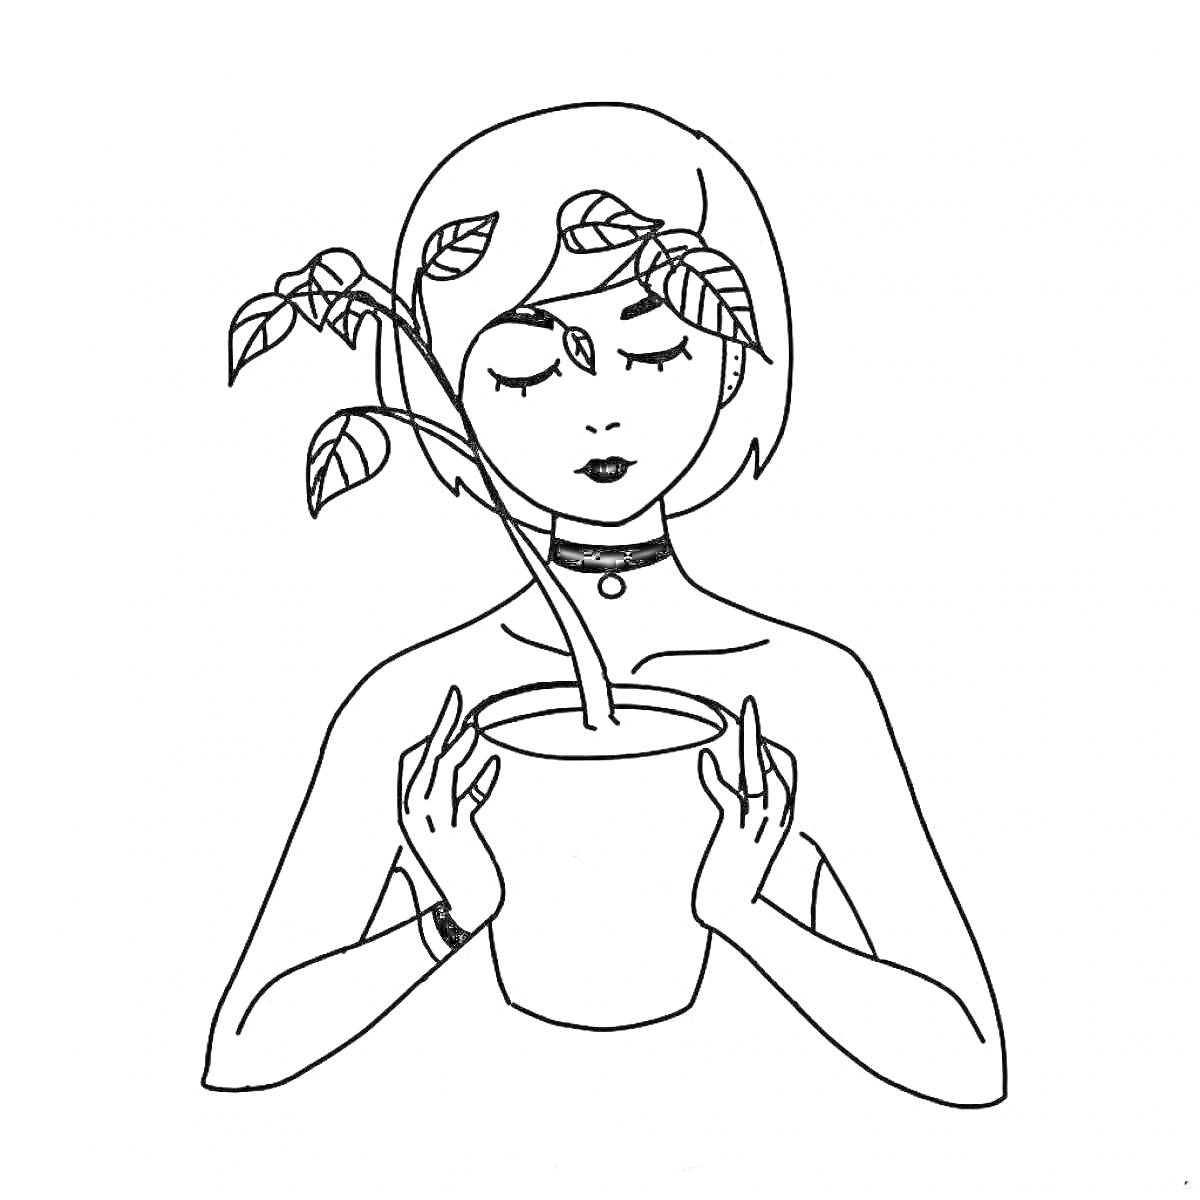 Девушка с короткими волосами, держащая горшок с растением